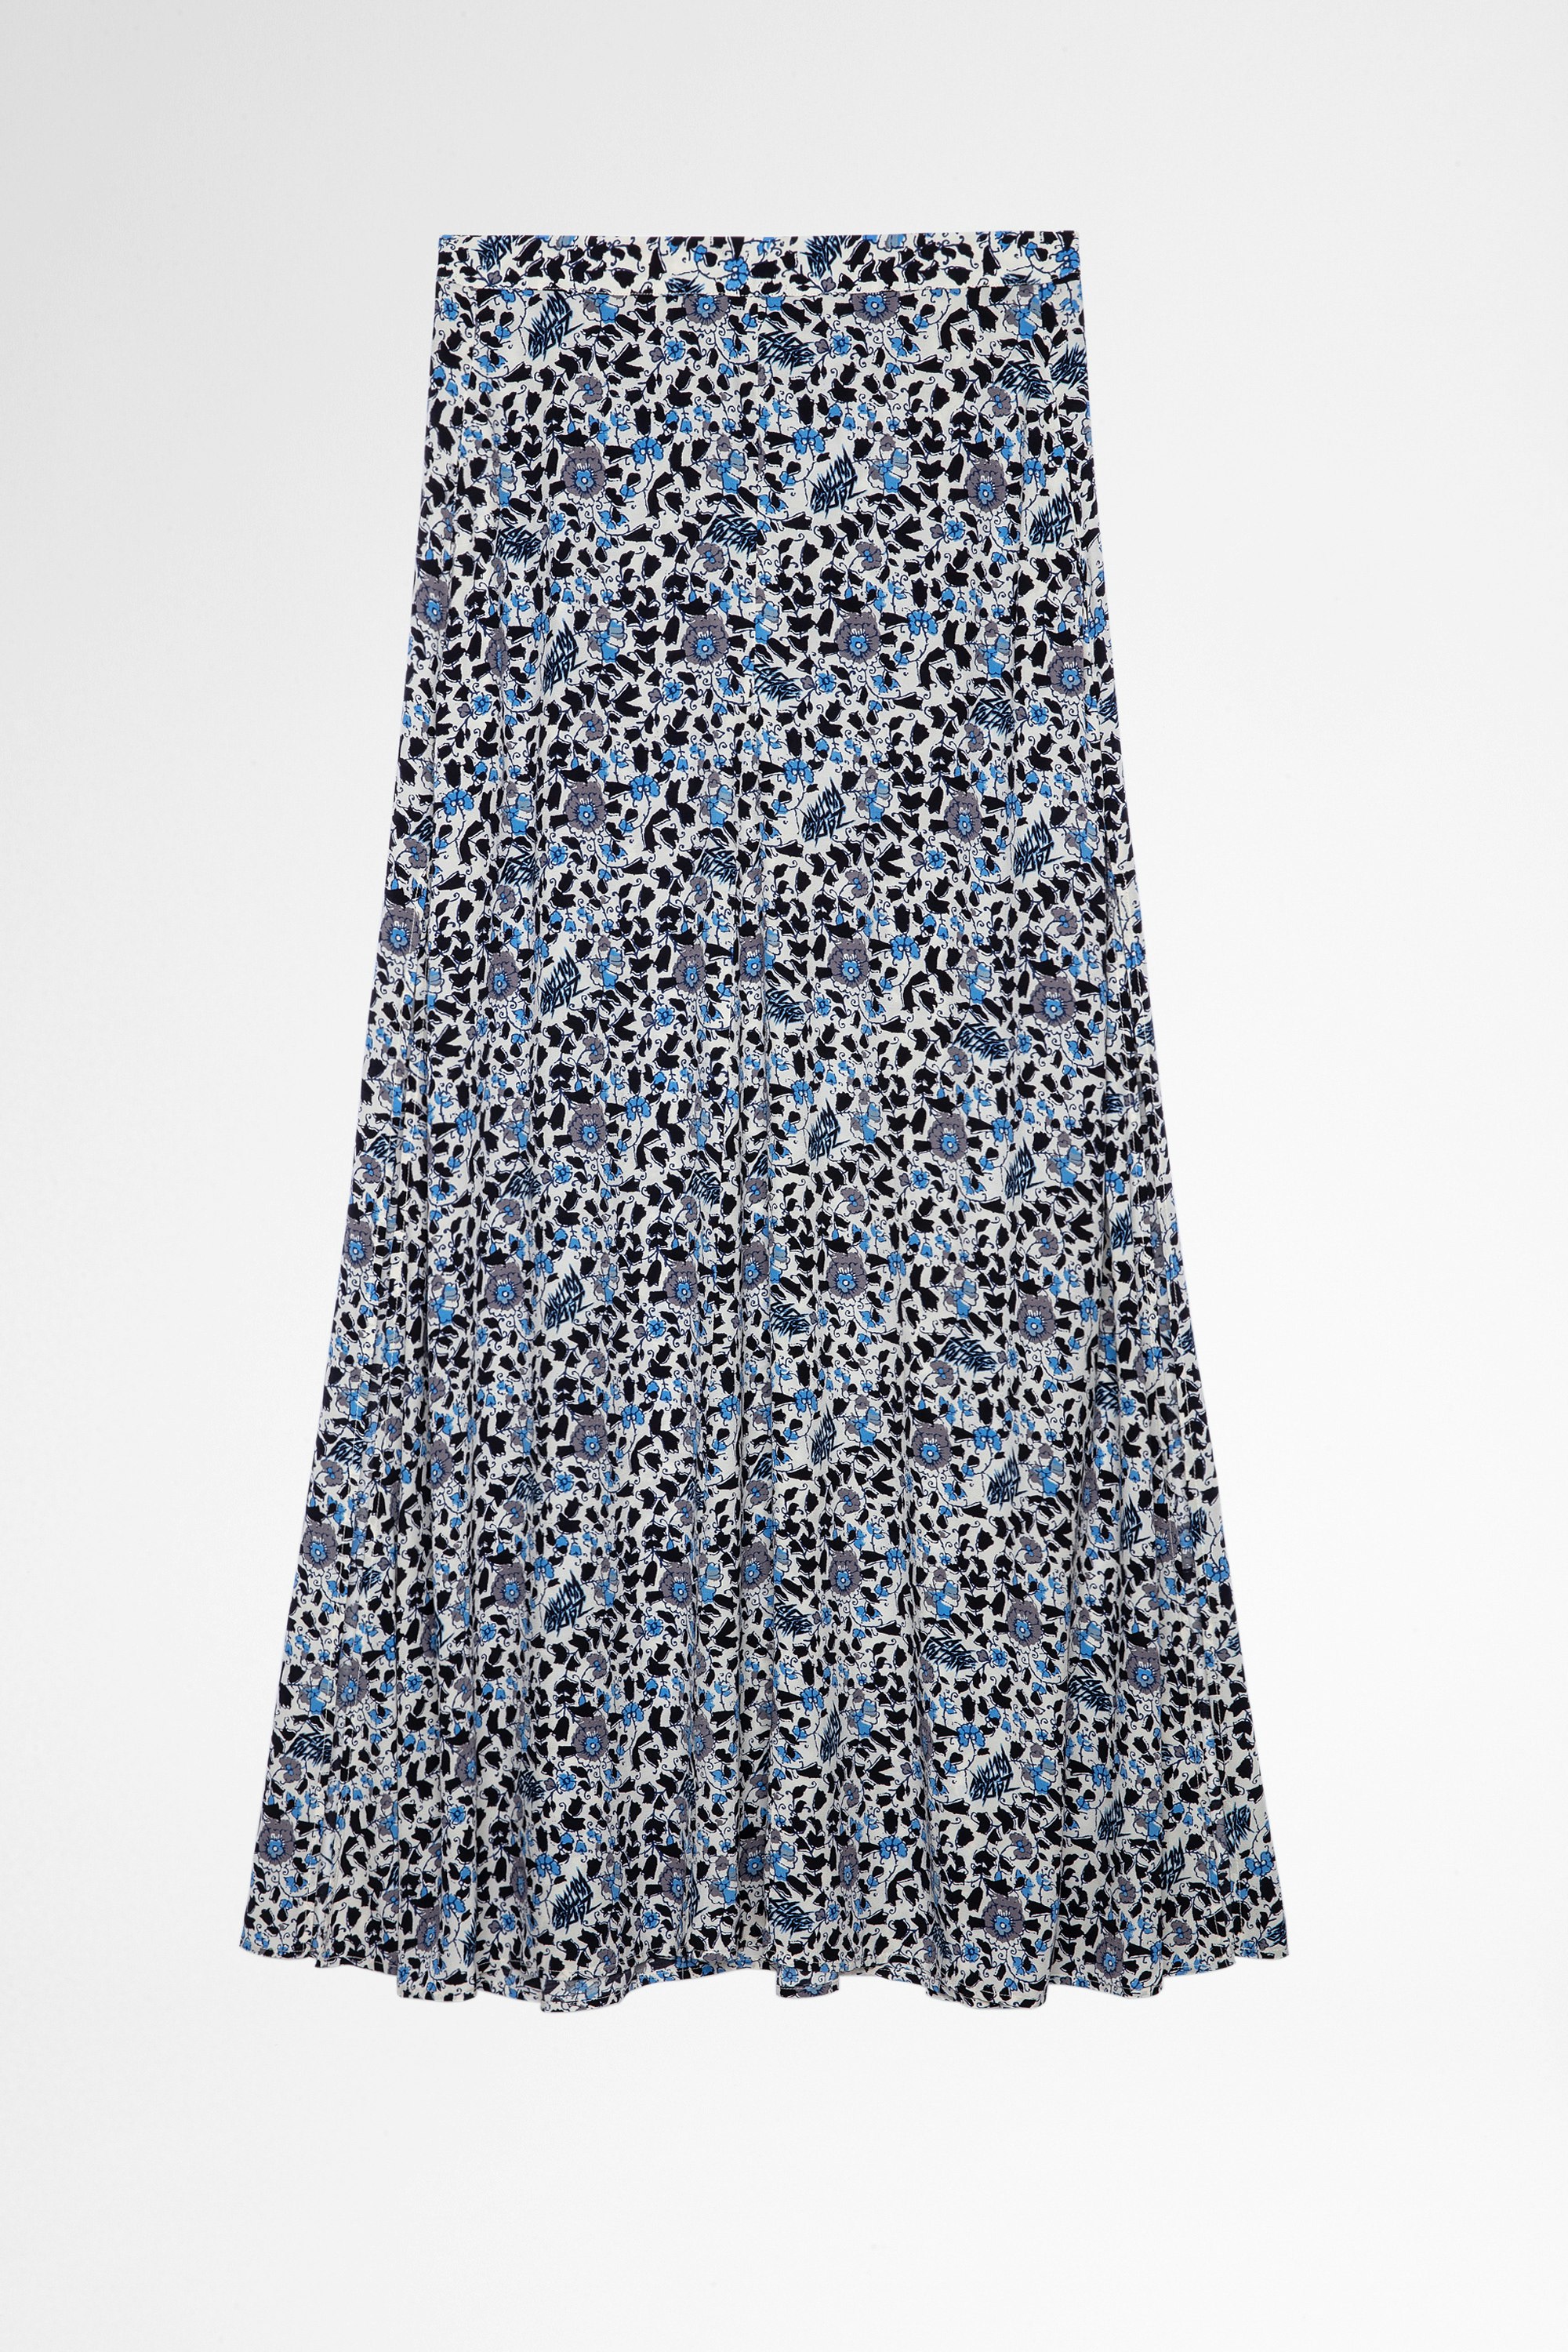 Falda Judith Falda larga azul y negra con estampado floral para mujer